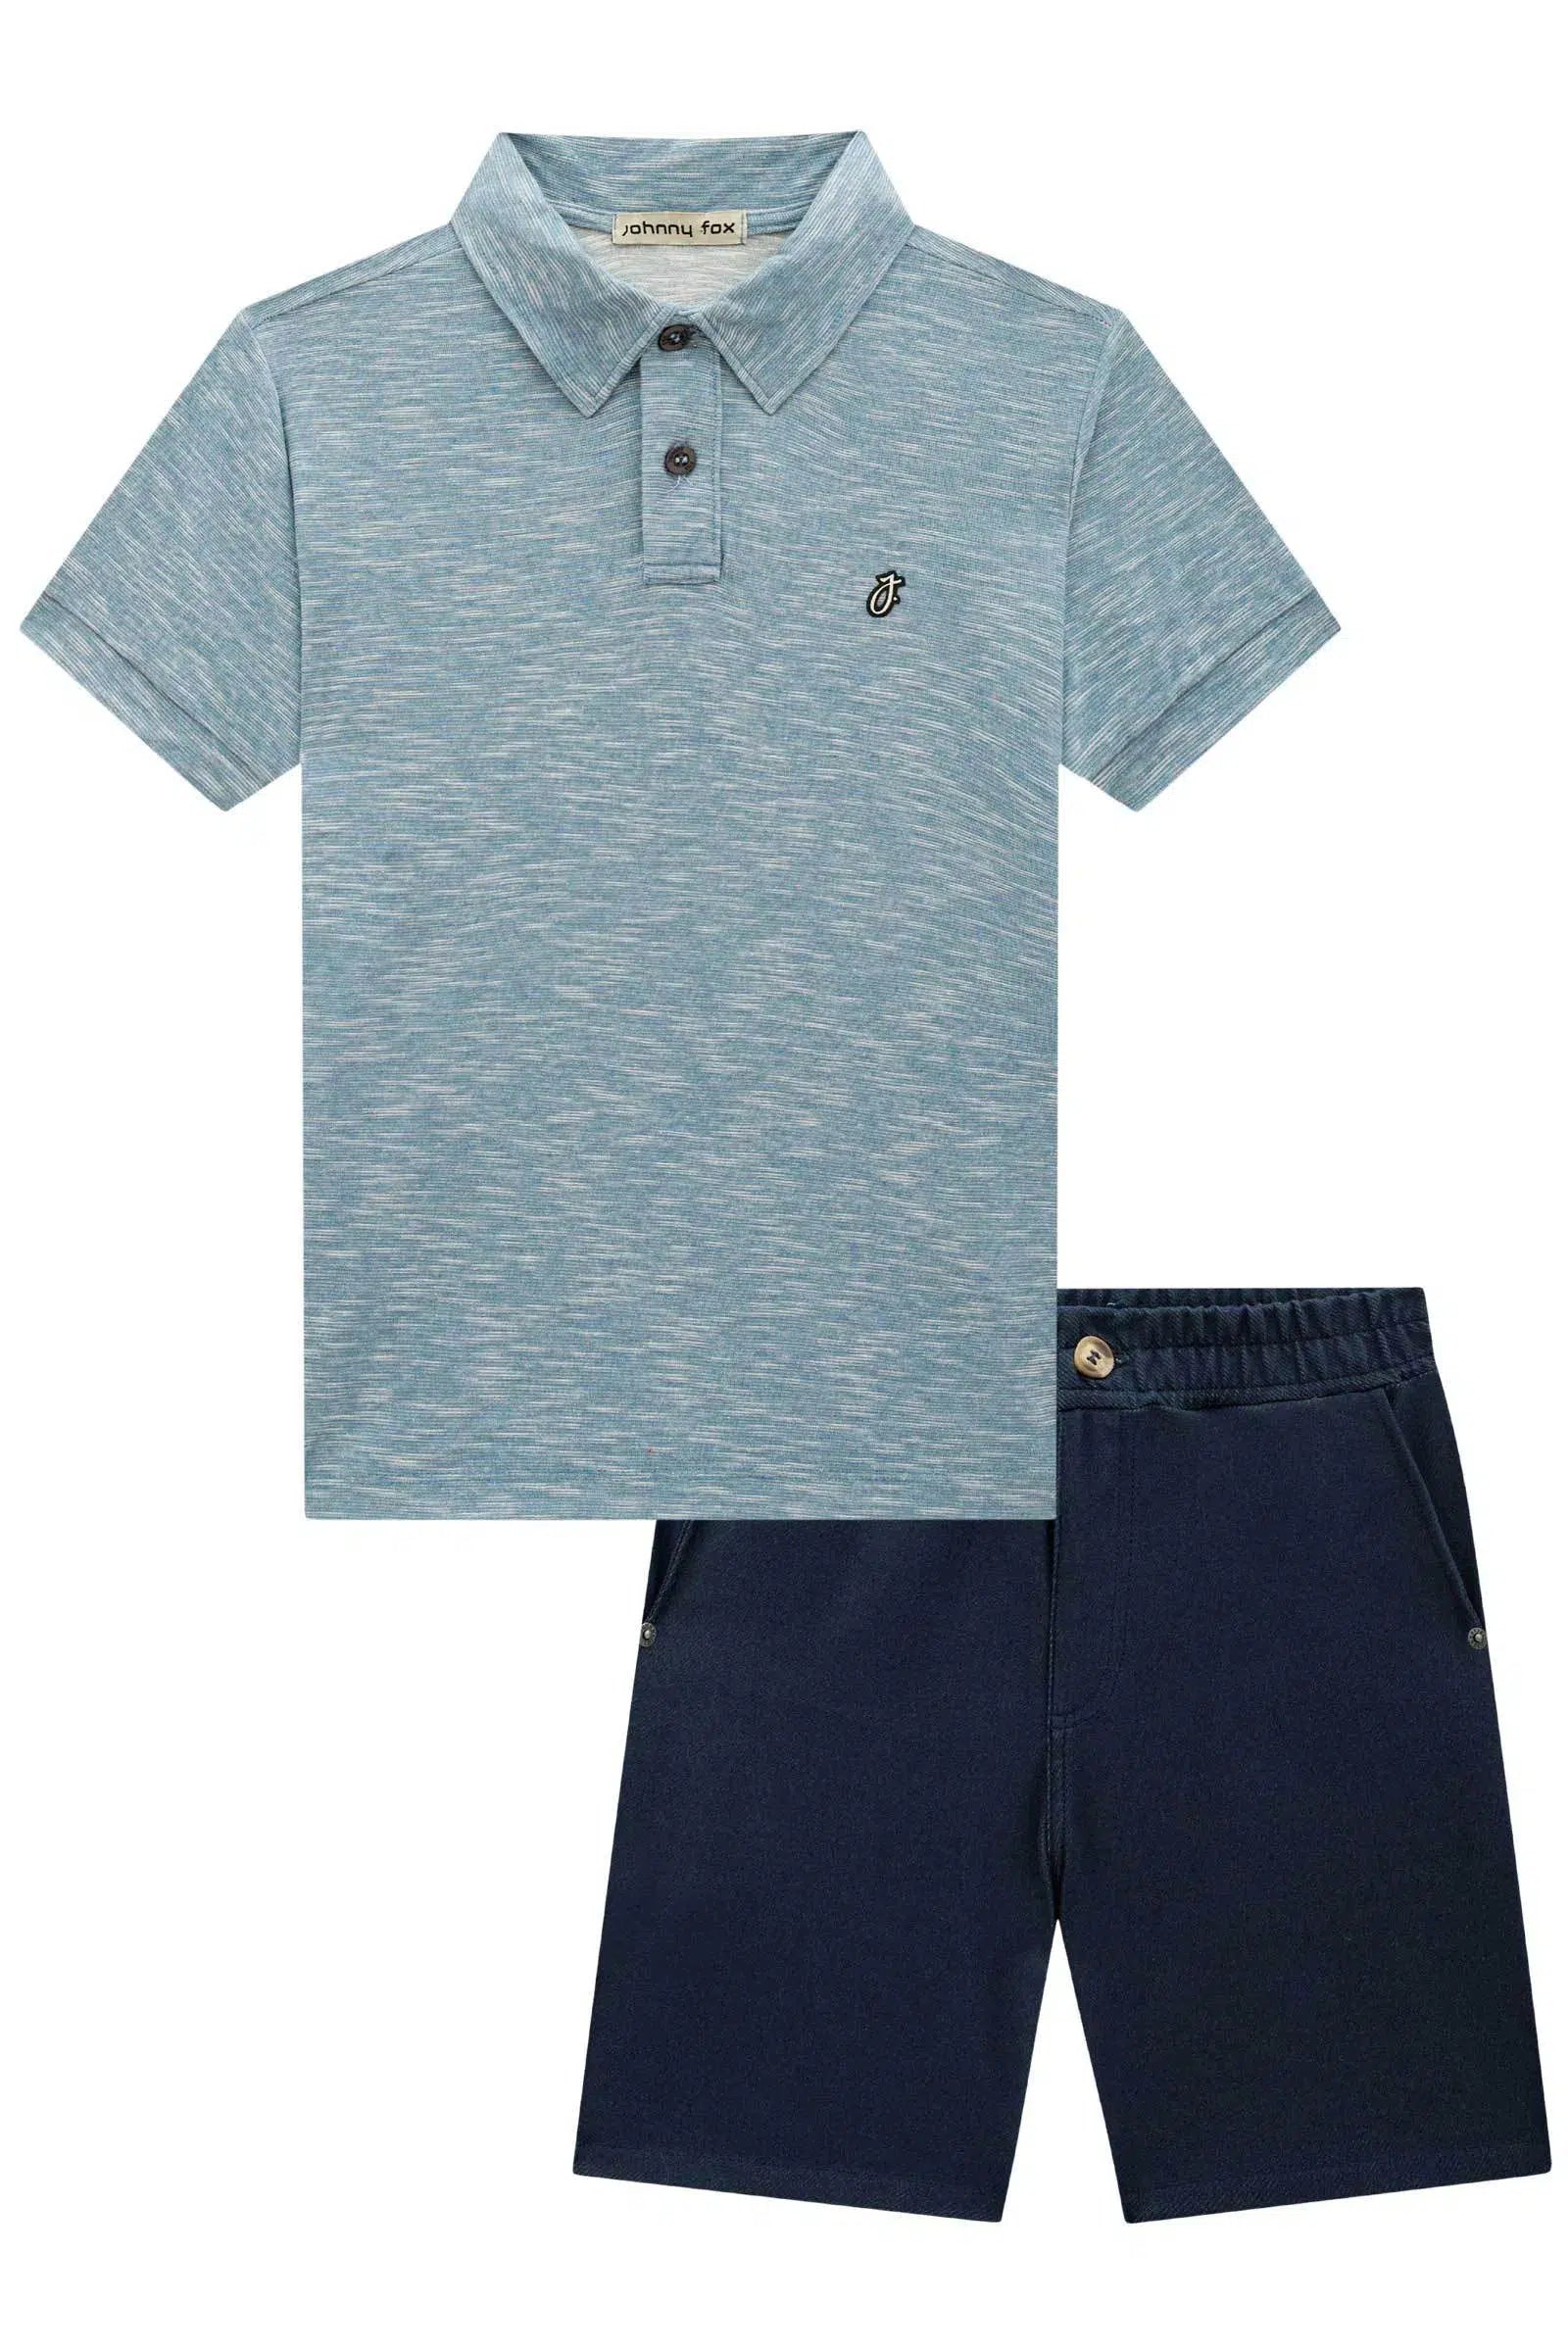 Conjunto de Camisa Polo Malha Diferenciada Fio Flamê e Bermuda em Cotton Jeans C/ Elastano 72766 Johnny Fox